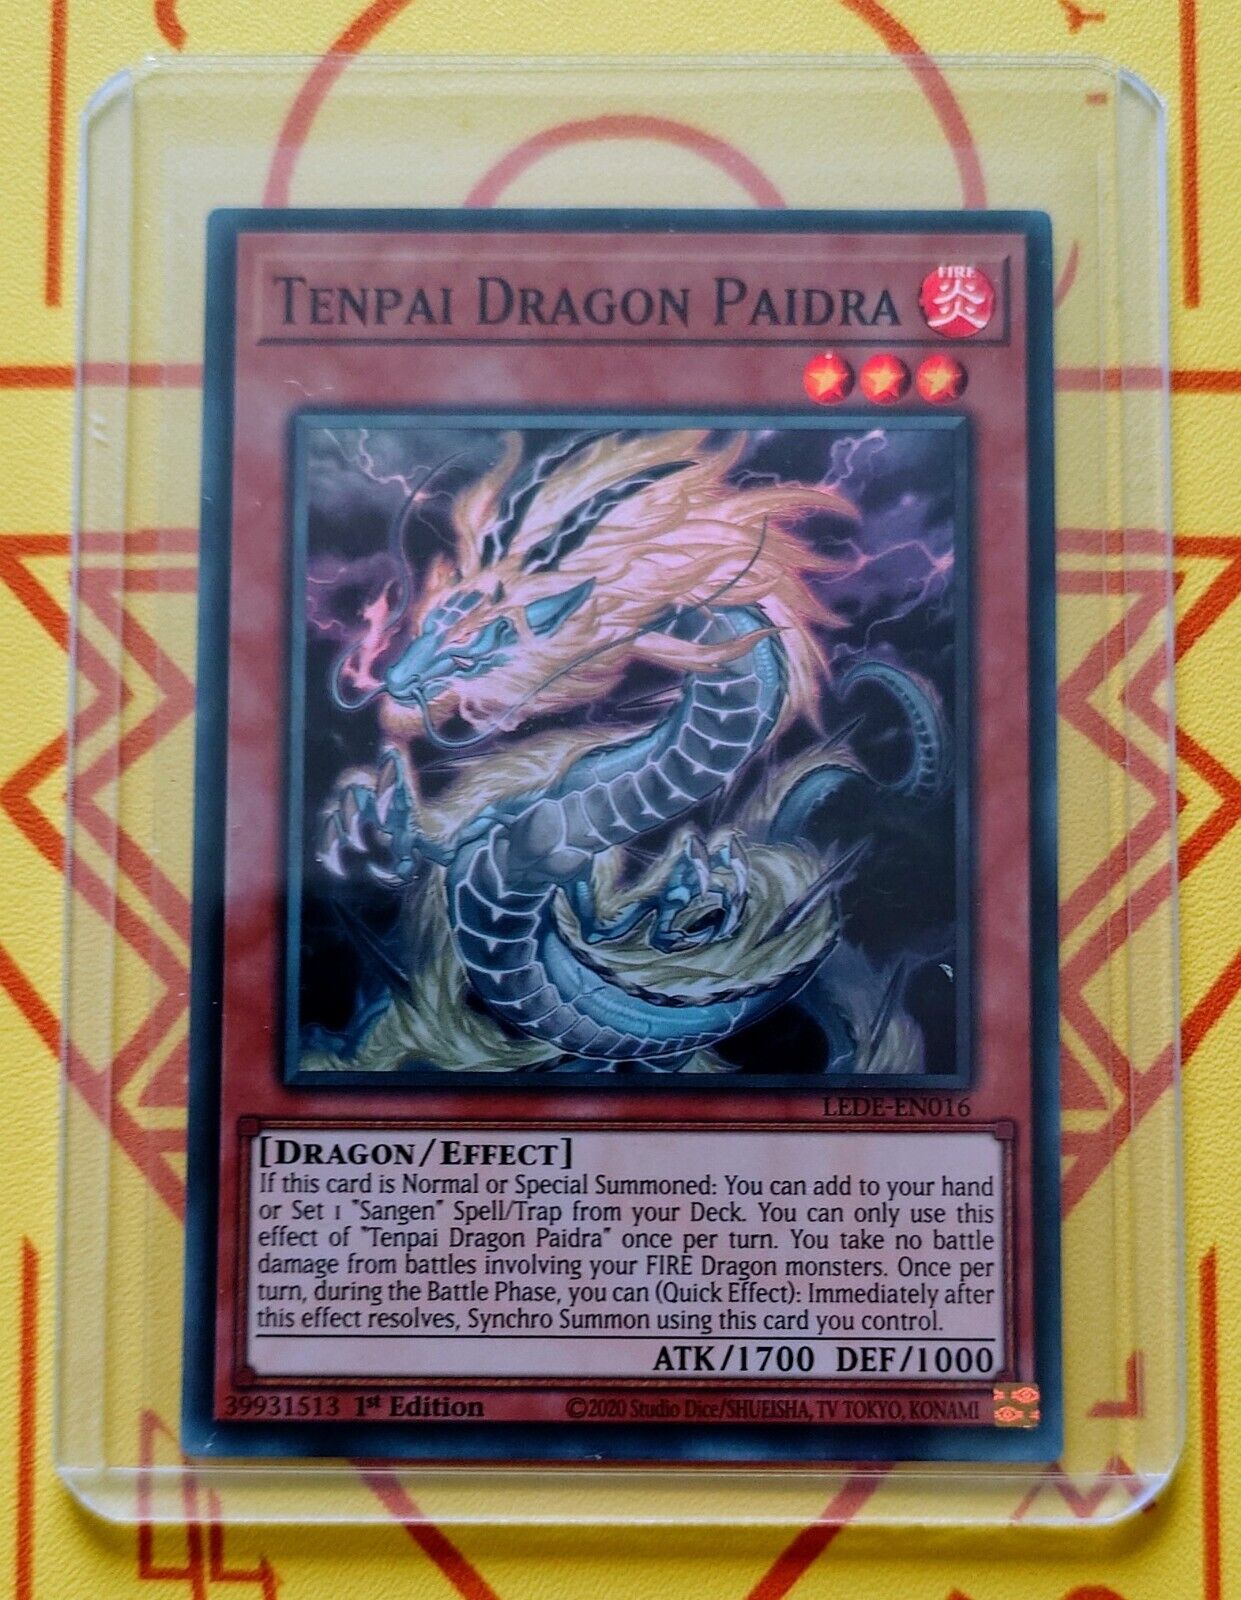 Tenpai Dragon Paidra (Super Rare) - LEDE-EN016 - Yu-Gi-Oh TCG